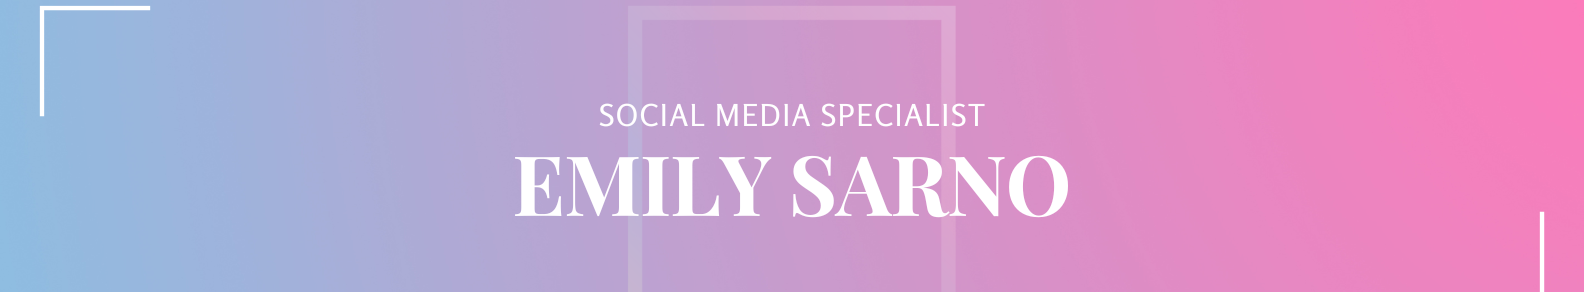 Emily Sarno's profile banner